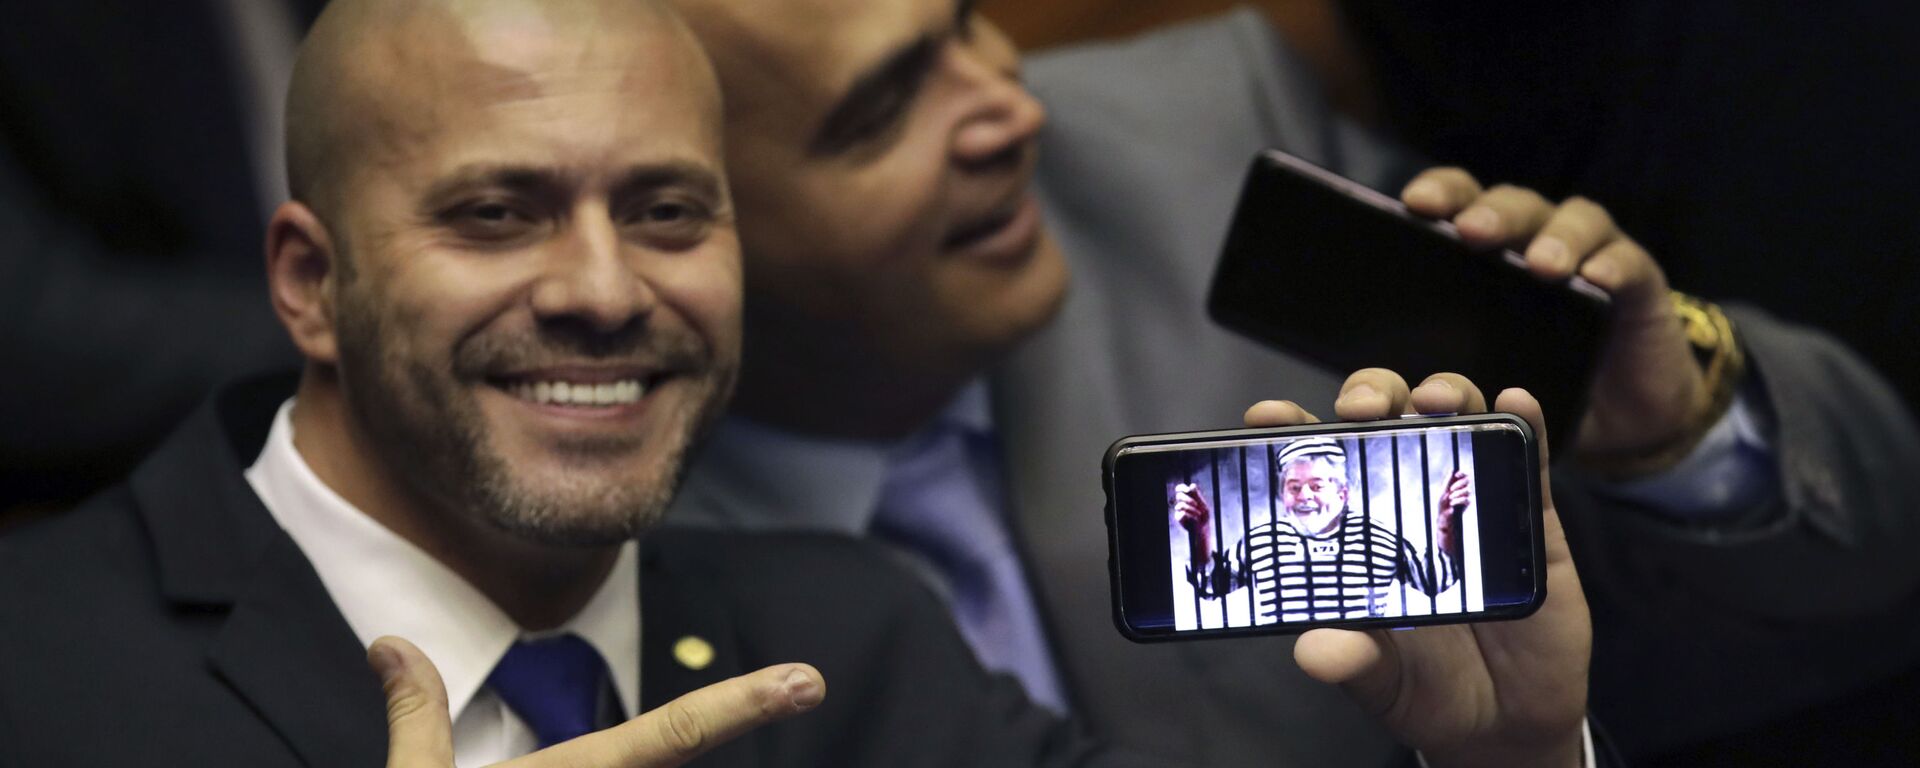 O deputado federal Daniel Silveira (PSL-RJ) segura imagem no celular com uma montagem do ex-presidente Luiz Inácio Lula da Silva preso em sessão da Câmara dos Deputados. - Sputnik Brasil, 1920, 28.04.2021